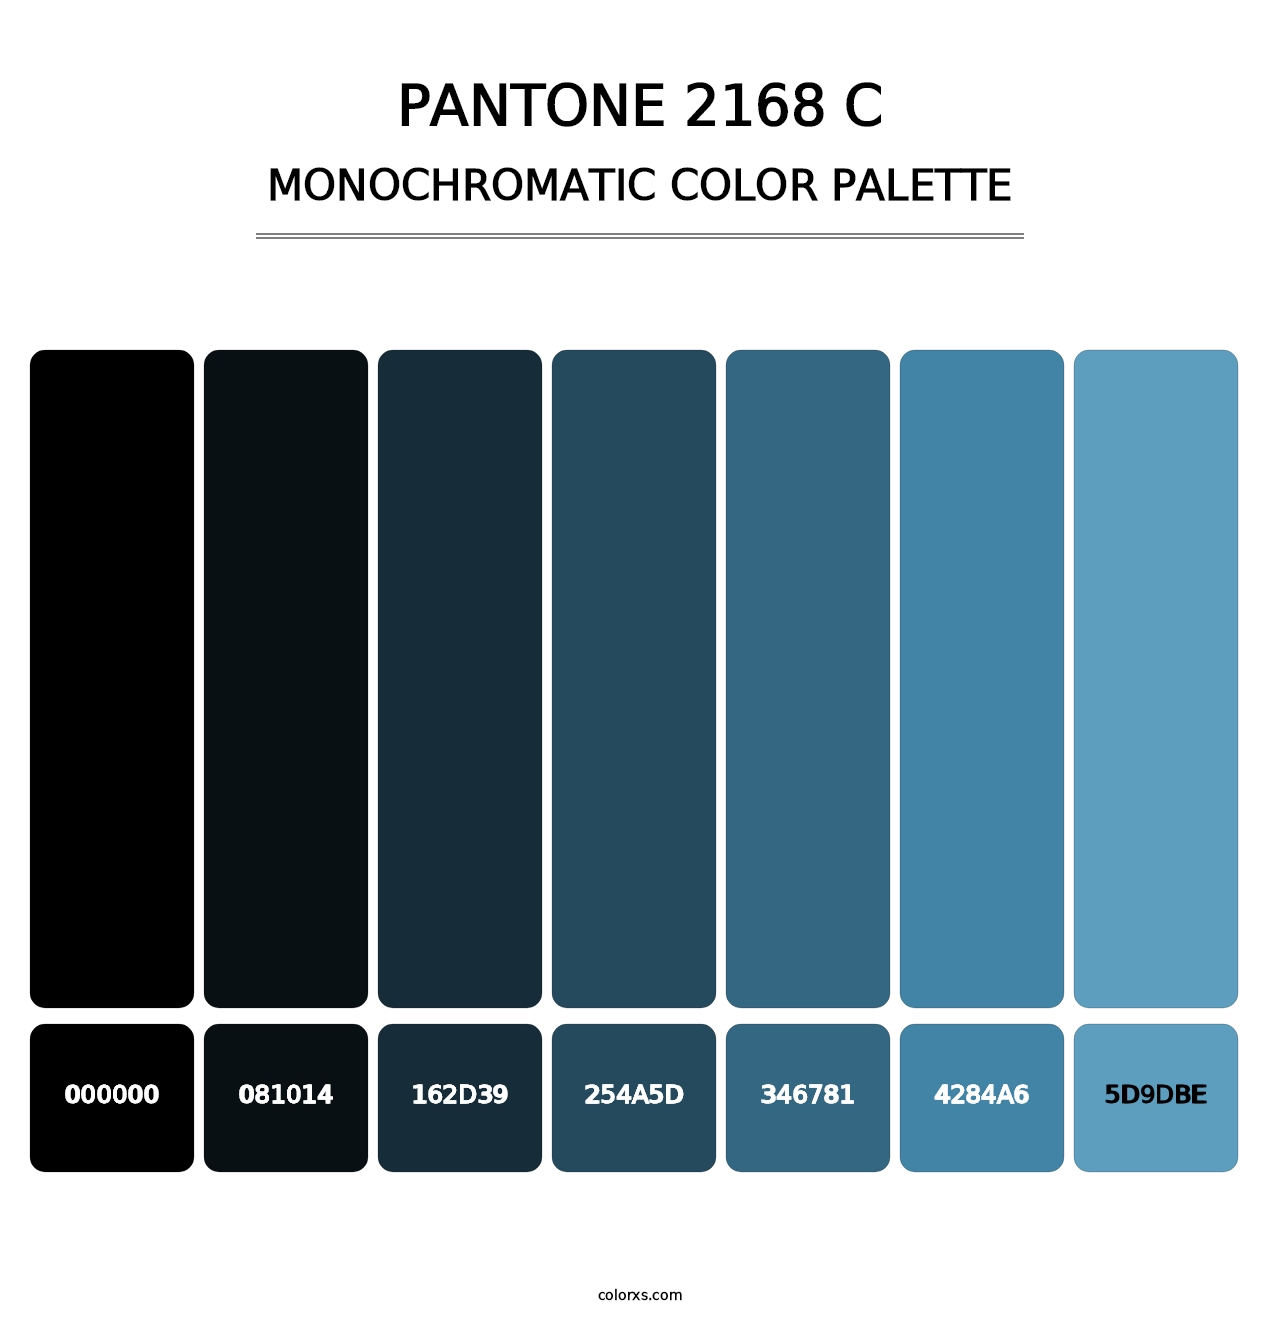 PANTONE 2168 C - Monochromatic Color Palette